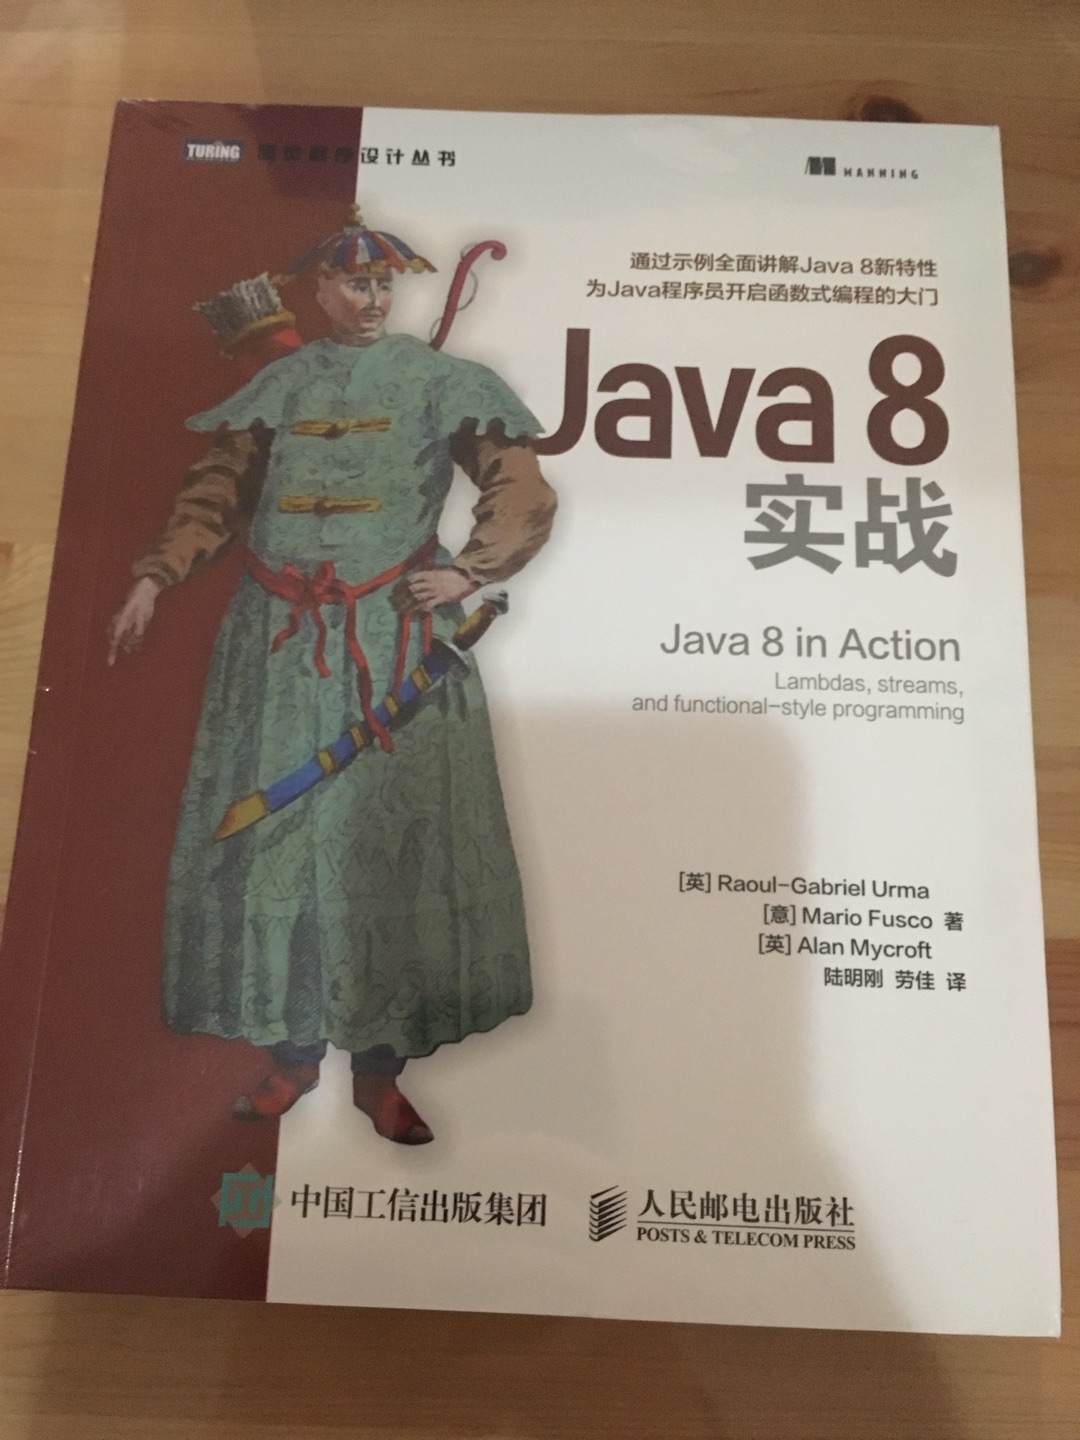 学习下java8的函数式编程，跟上时代